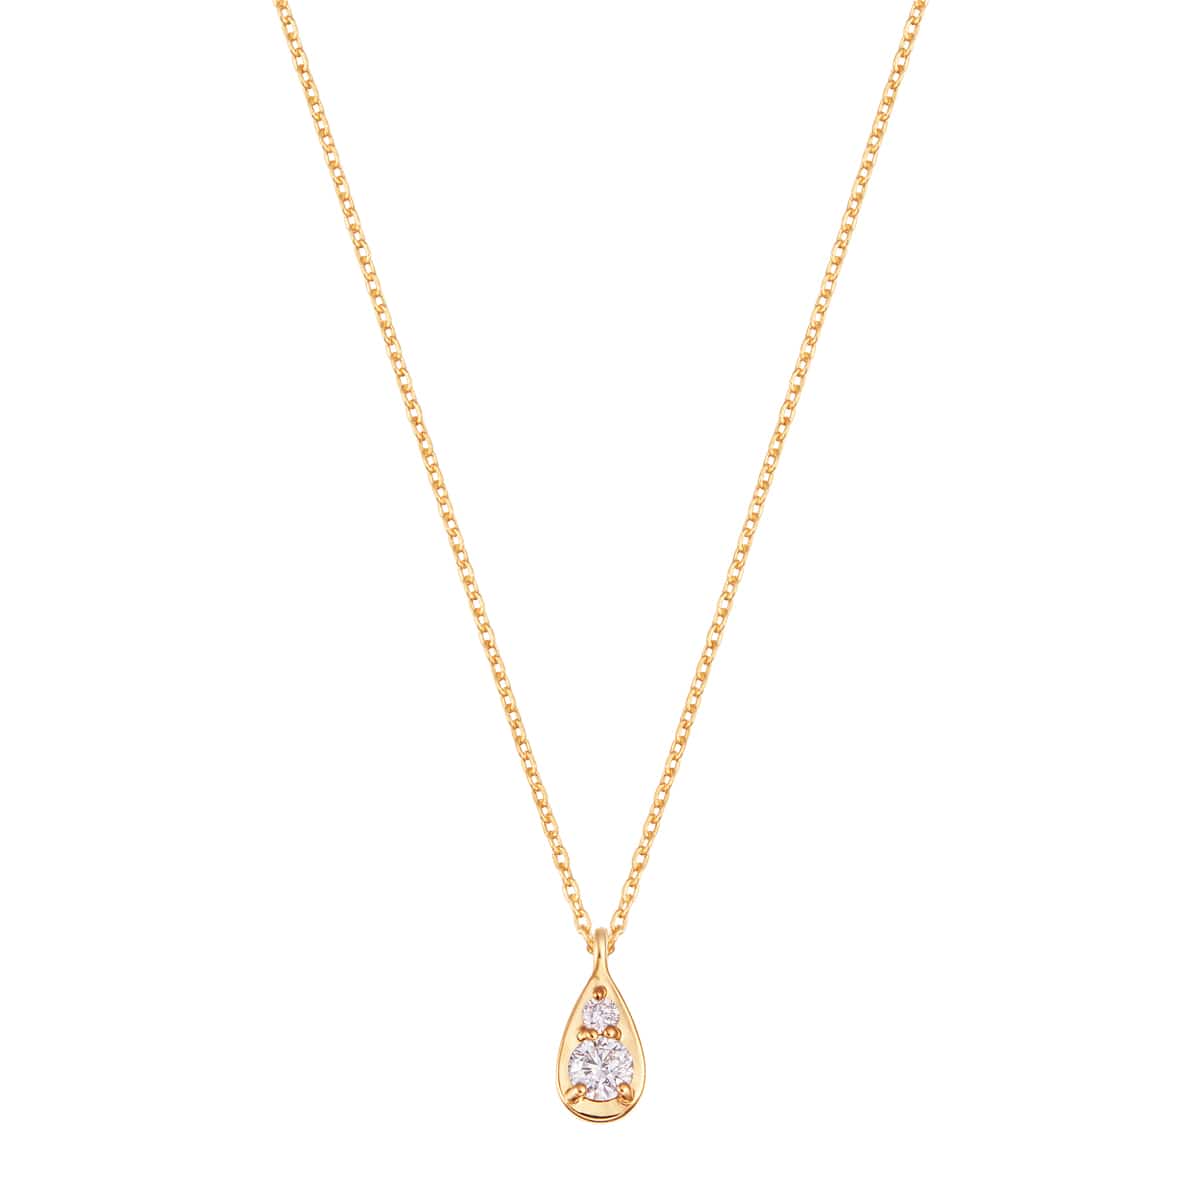 TSUTSUMIオリジナルブランド『Blessed Rain』の光を受けてきらめく『しずく』をダイヤモンドとメタルで表現したミニマルなデザインが美しいK18イエローゴールドダイヤモンドネックレス